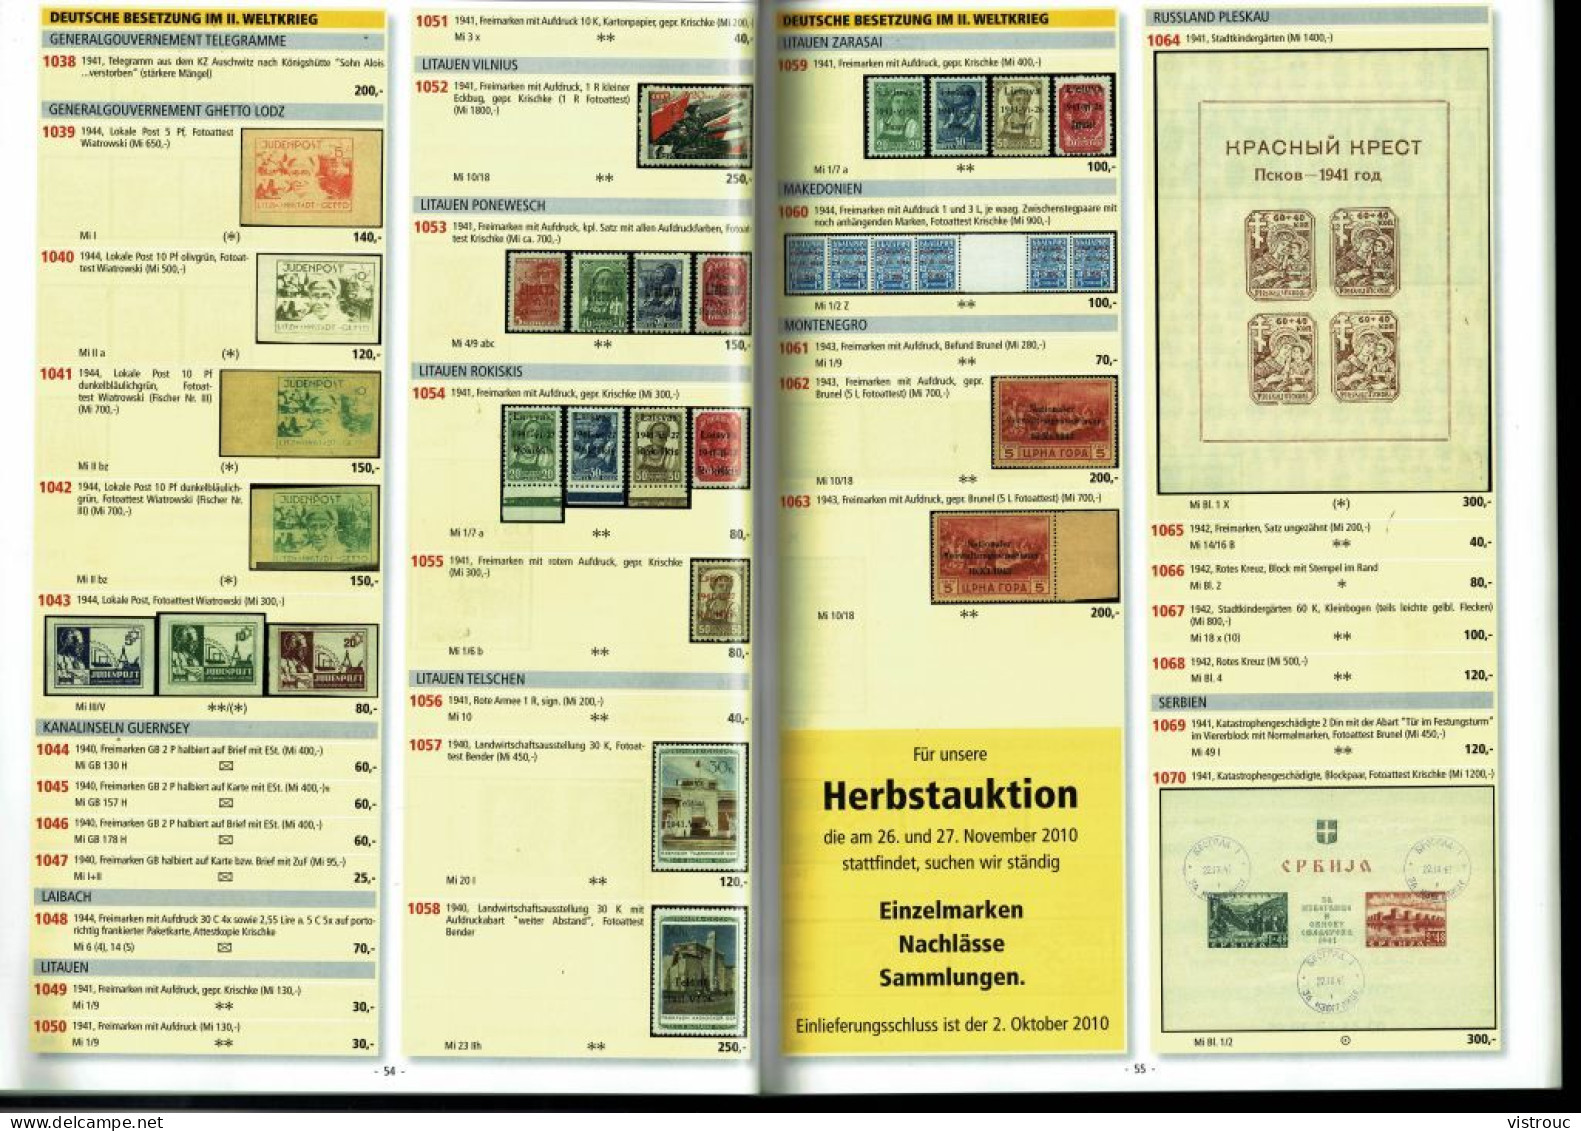 Maison AIX-PHILA - 46. Auktion Briefmarken - 14/15-05-2010 - Aachen. - Cataloghi Di Case D'aste